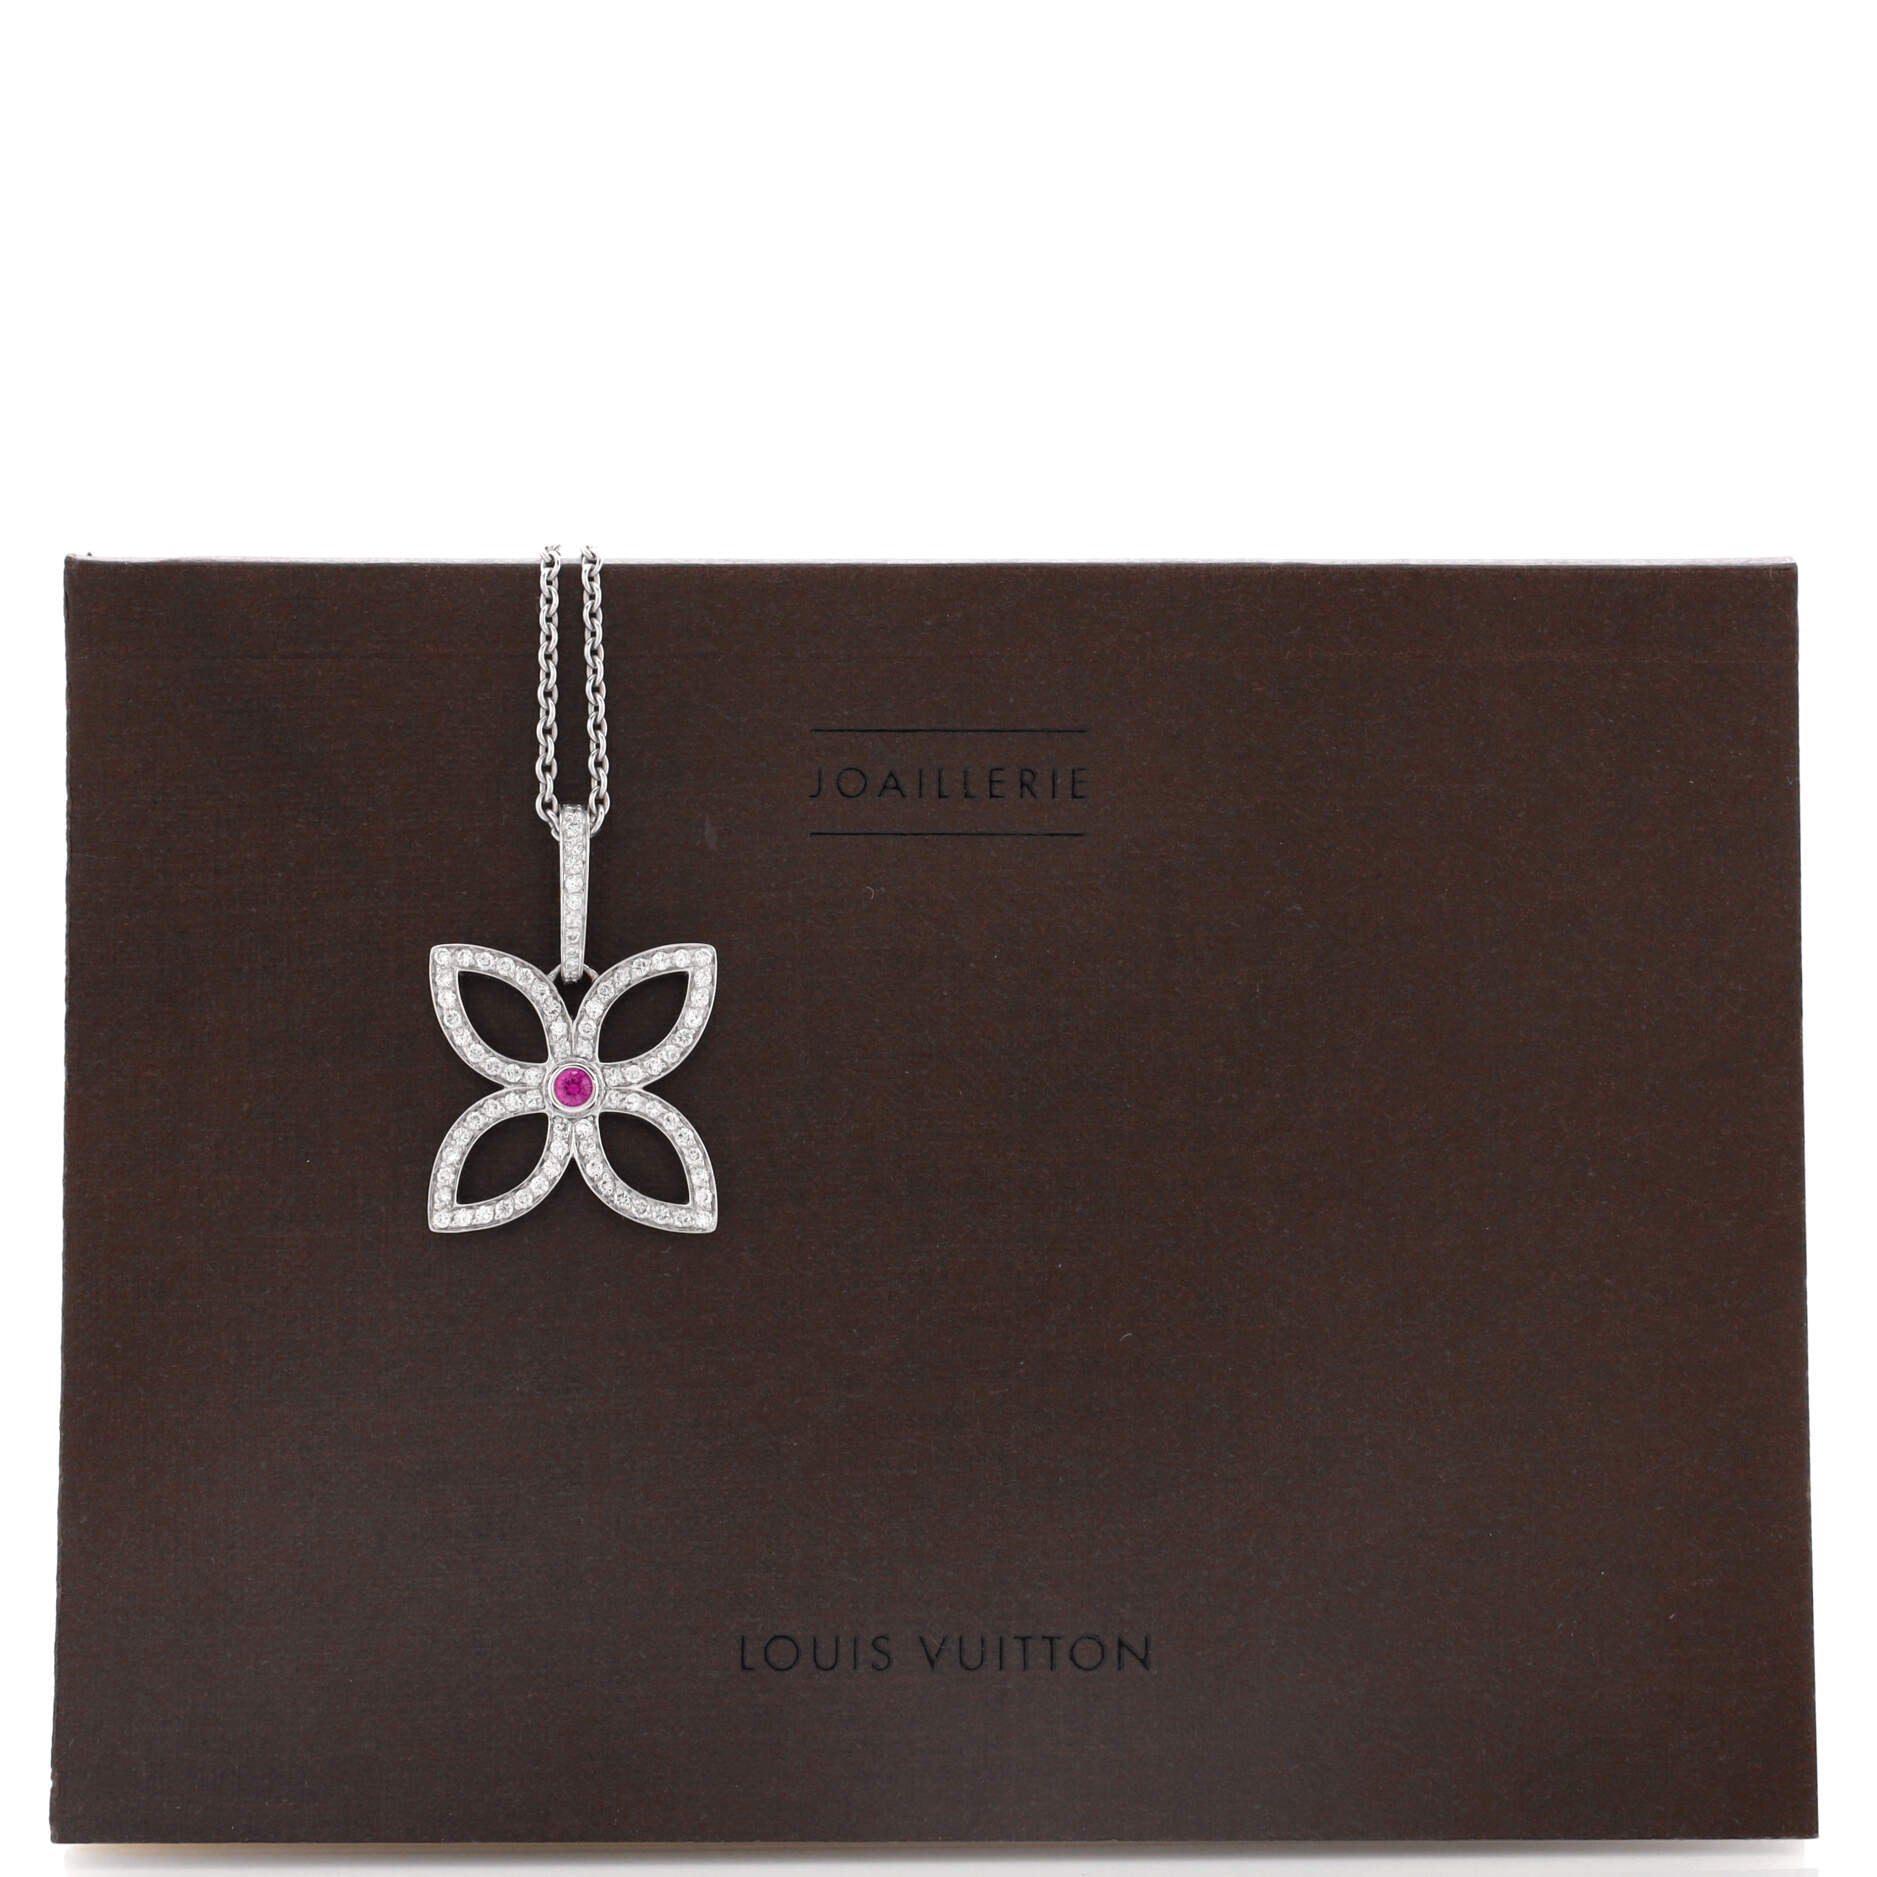 Vivienne Plum Flowers pendant by Louis Vuitton, Louis Vuitton